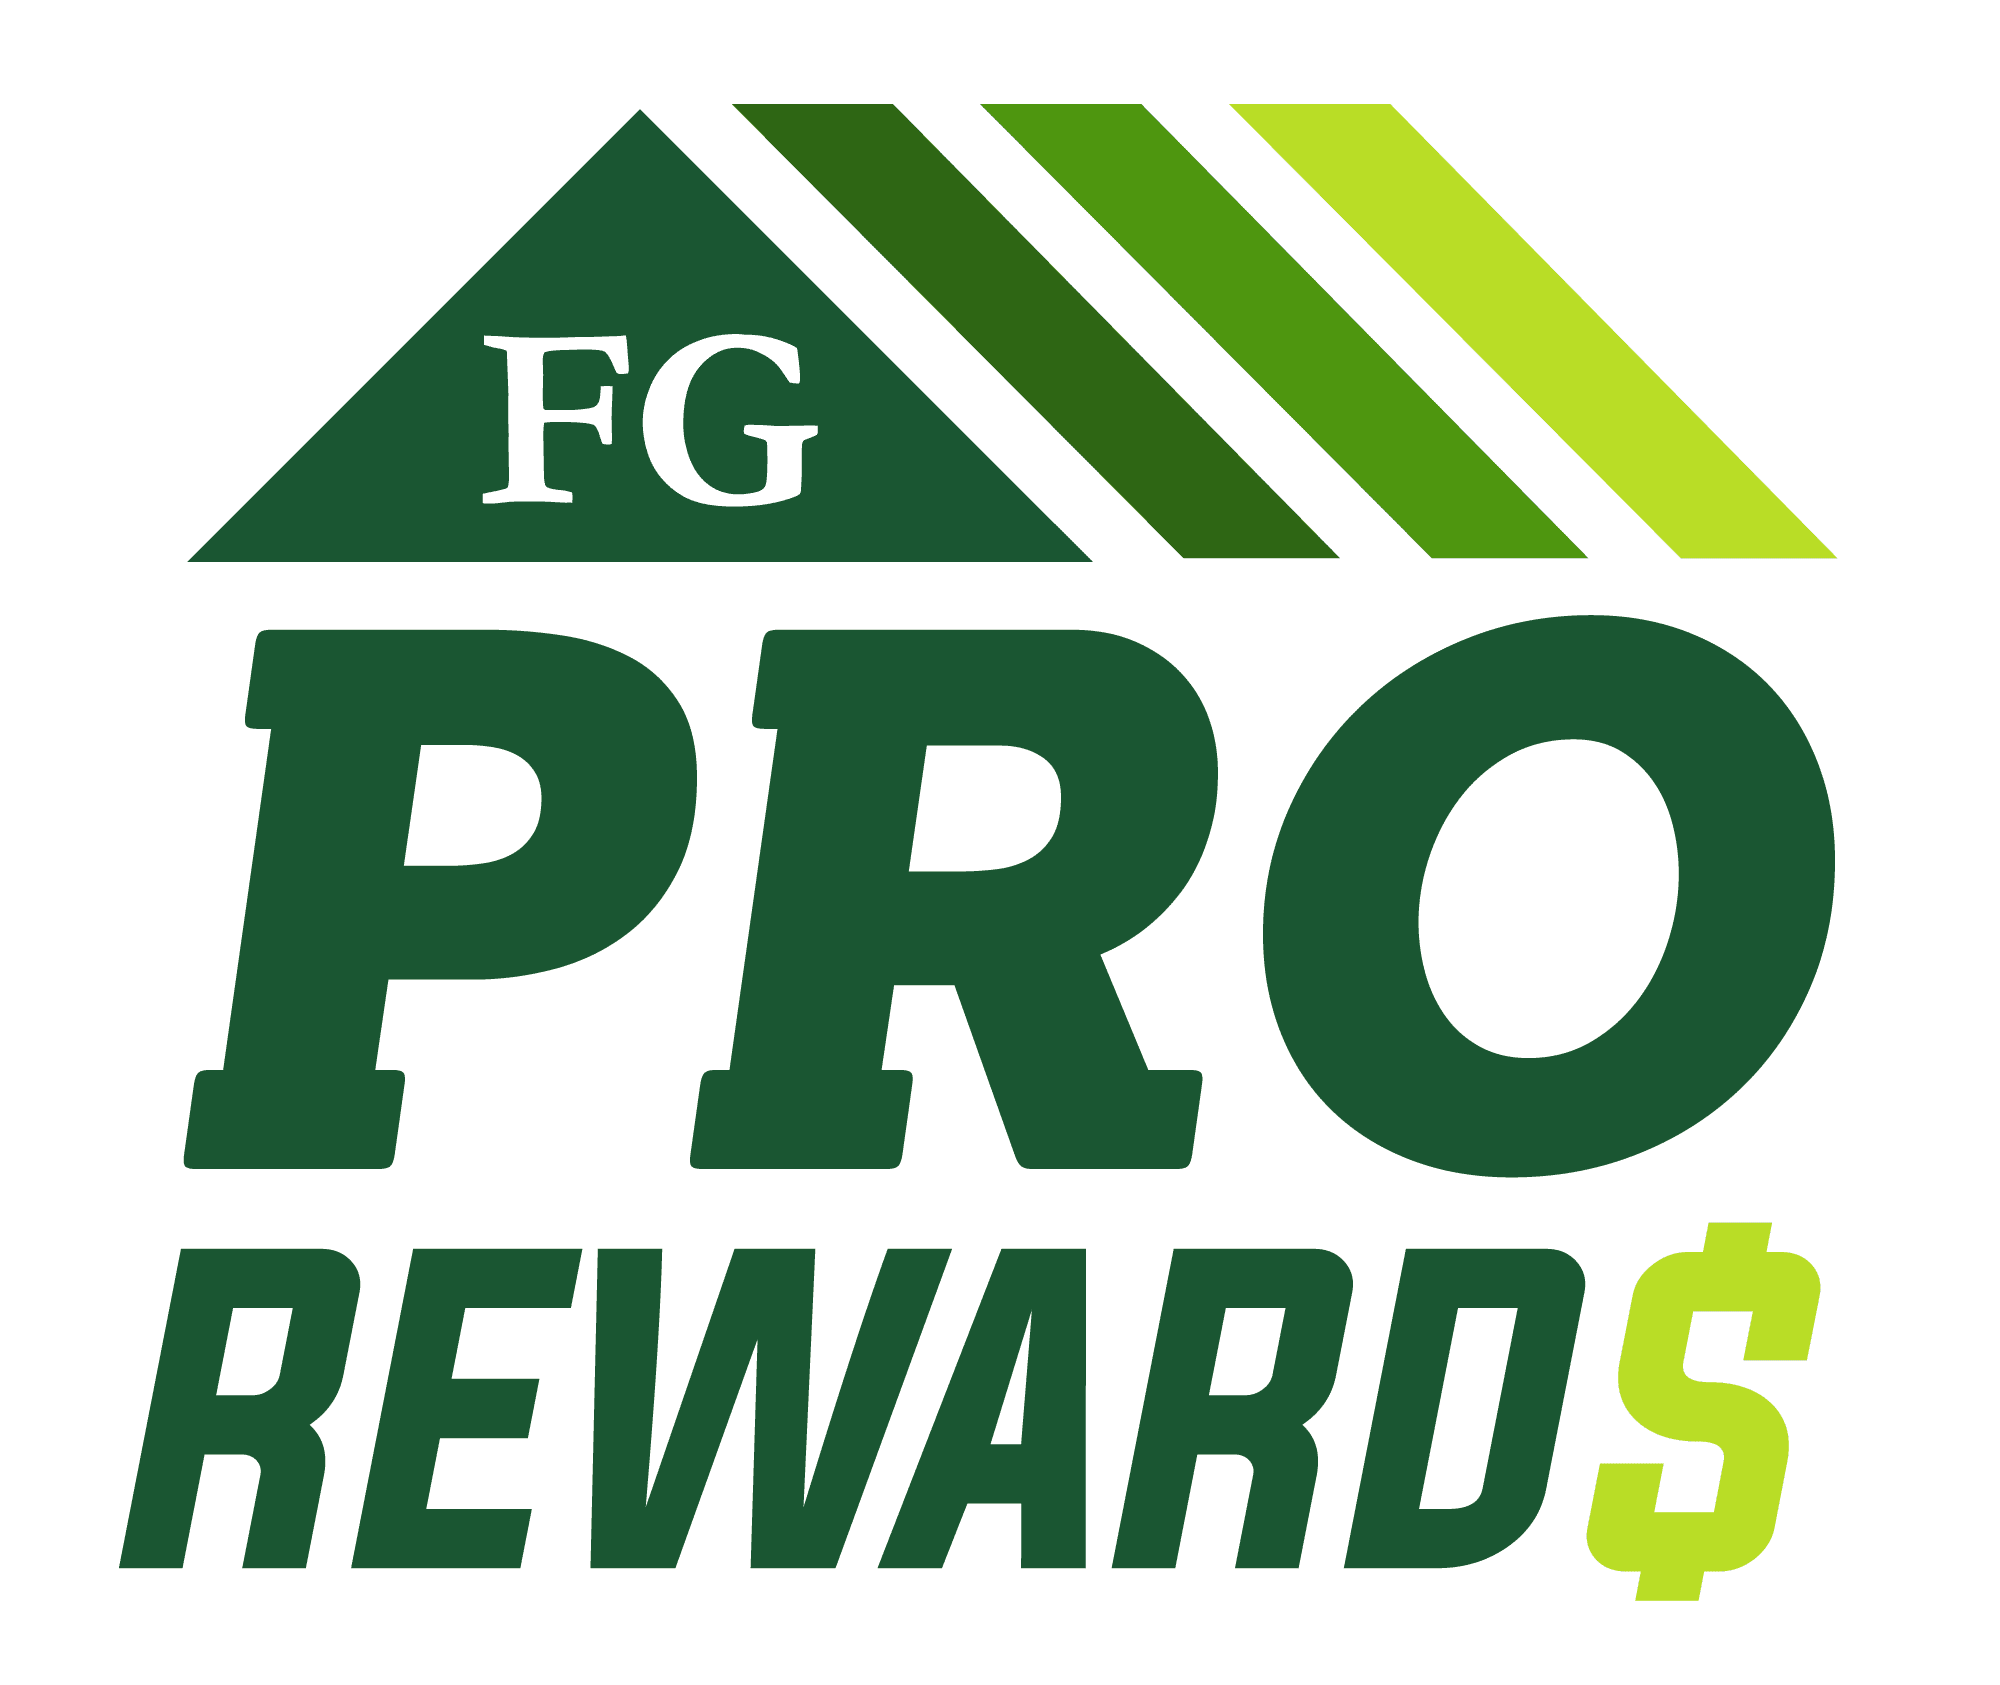 FG Pro Rewards Logo